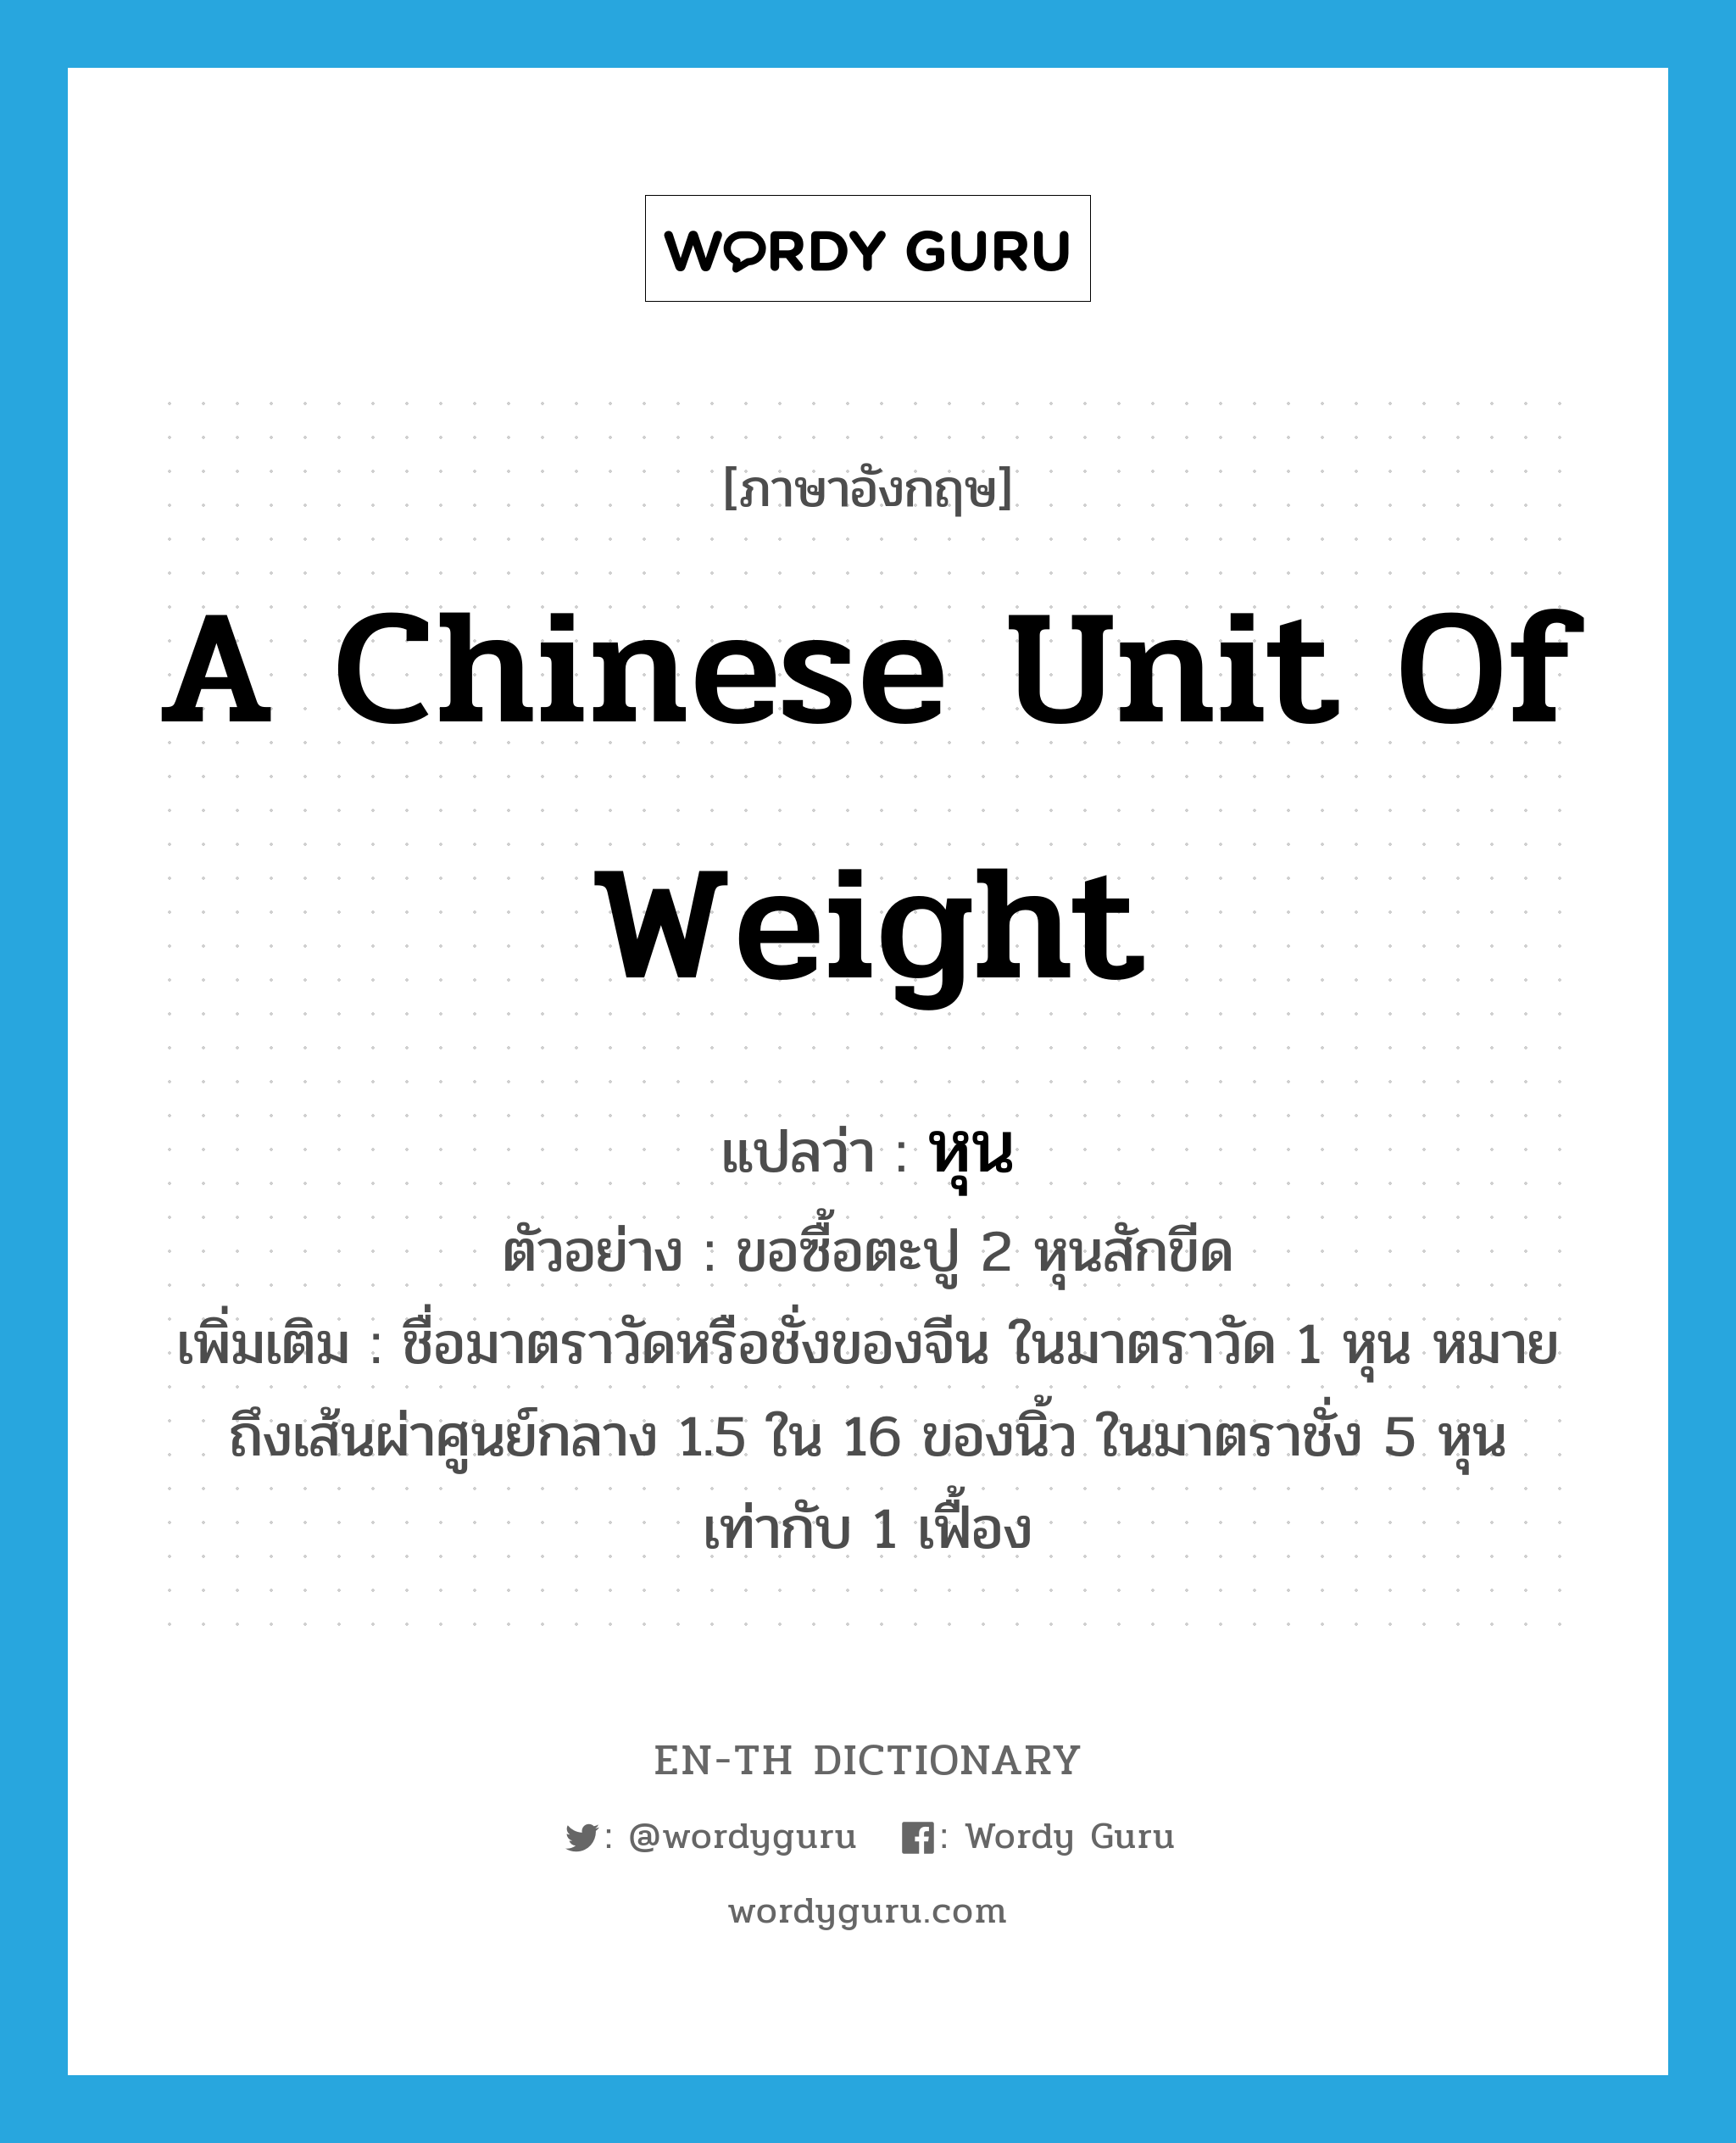 หุน ภาษาอังกฤษ?, คำศัพท์ภาษาอังกฤษ หุน แปลว่า a Chinese unit of weight ประเภท CLAS ตัวอย่าง ขอซื้อตะปู 2 หุนสักขีด เพิ่มเติม ชื่อมาตราวัดหรือชั่งของจีน ในมาตราวัด 1 หุน หมายถึงเส้นผ่าศูนย์กลาง 1.5 ใน 16 ของนิ้ว ในมาตราชั่ง 5 หุน เท่ากับ 1 เฟื้อง หมวด CLAS